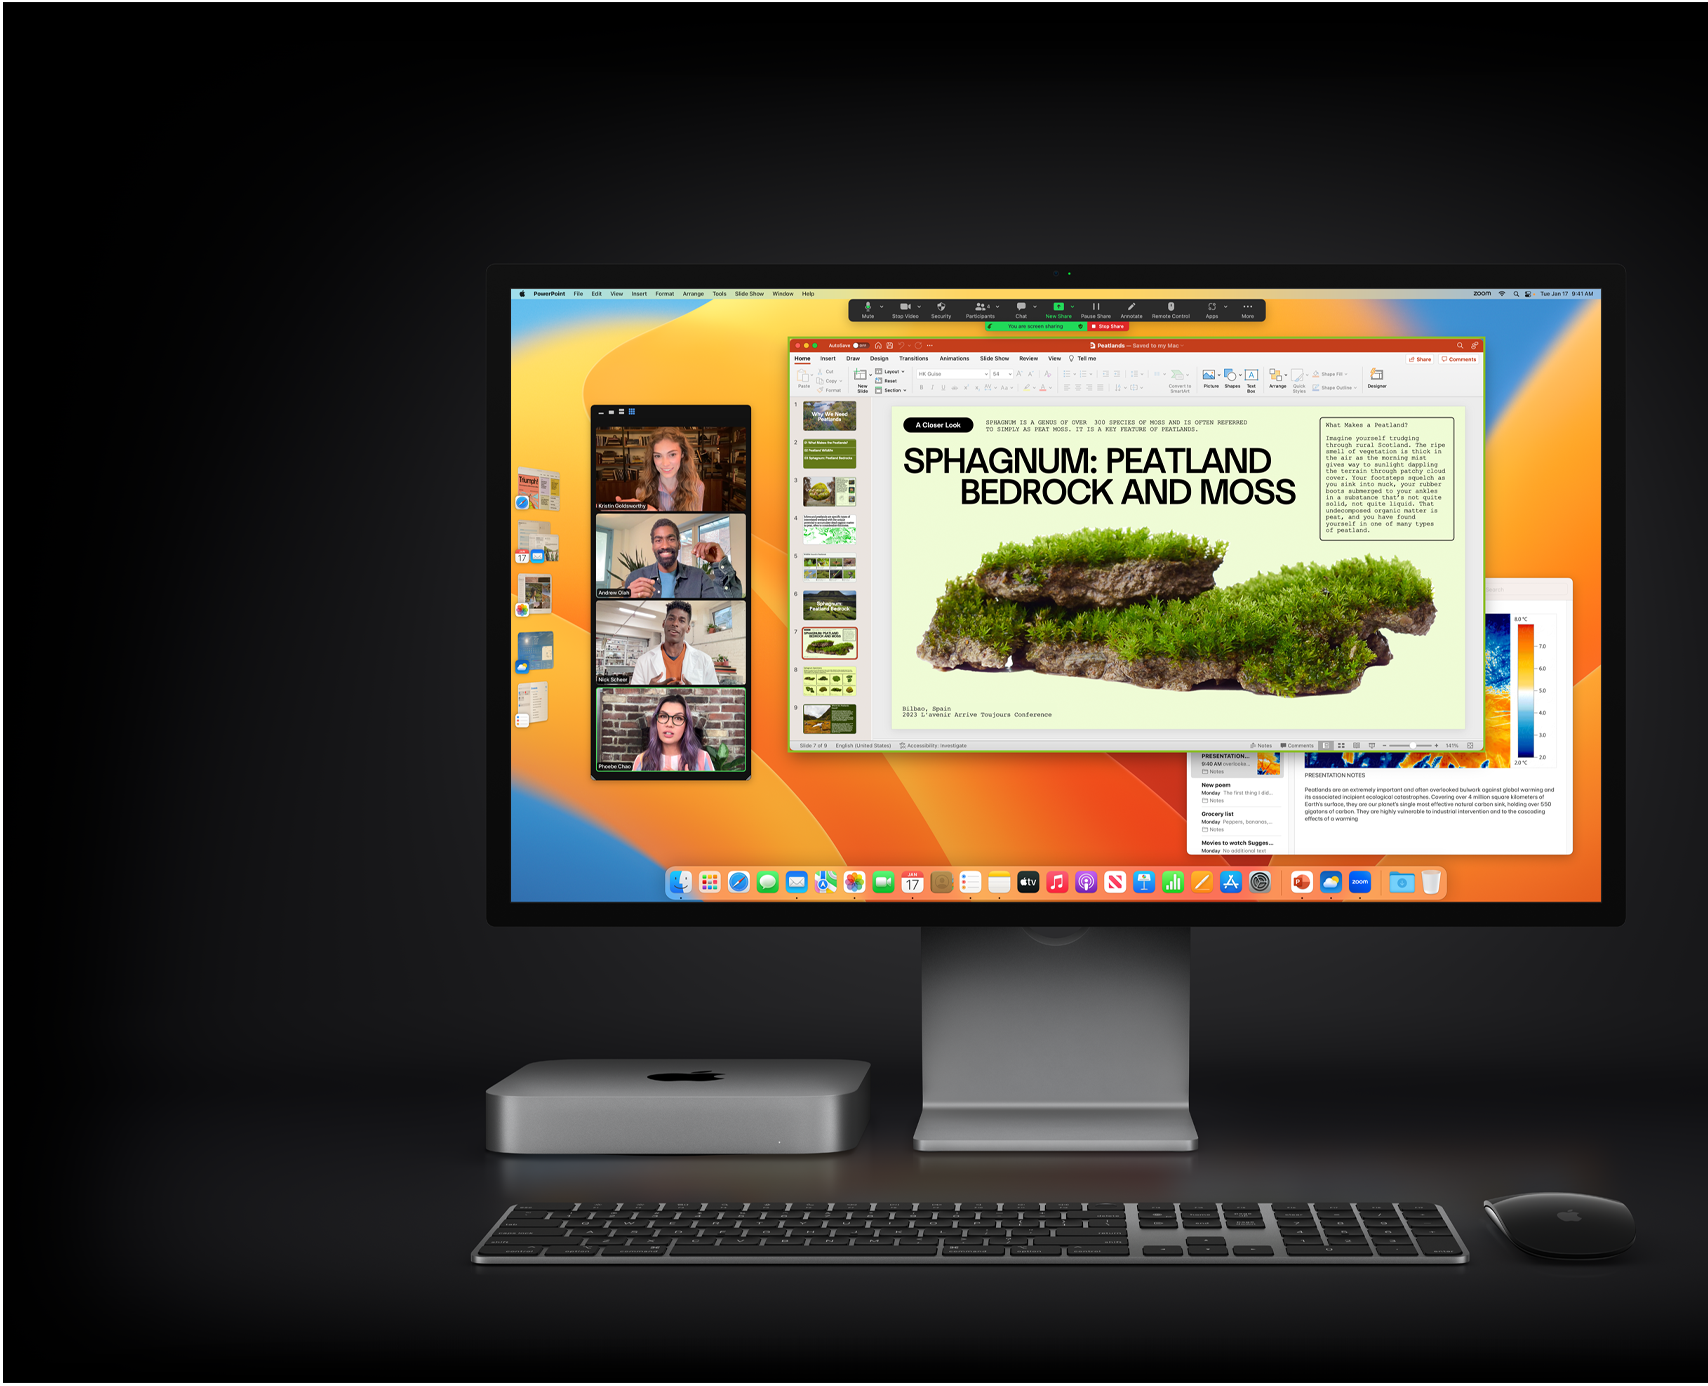 Mac mini avec Magic Mouse, Magic Keyboard et Studio Display, où s’affiche une présentation Microsoft PowerPoint partagée durant une réunion Zoom, en plus de l’app Notes en arrière-plan.